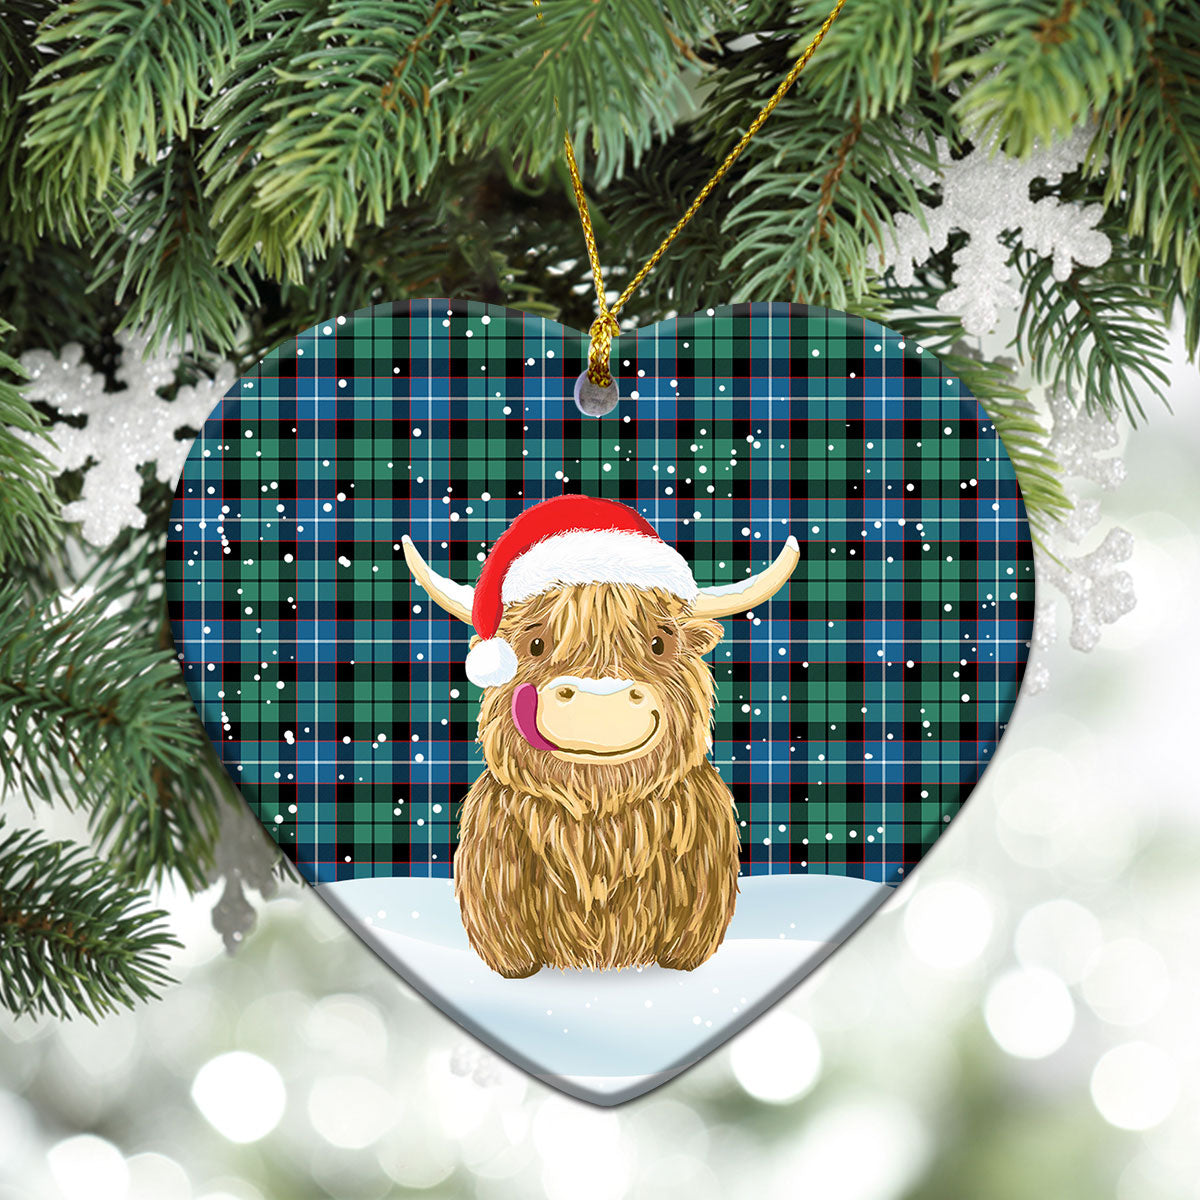 Galbraith Ancient Tartan Christmas Ceramic Ornament - Highland Cows Style